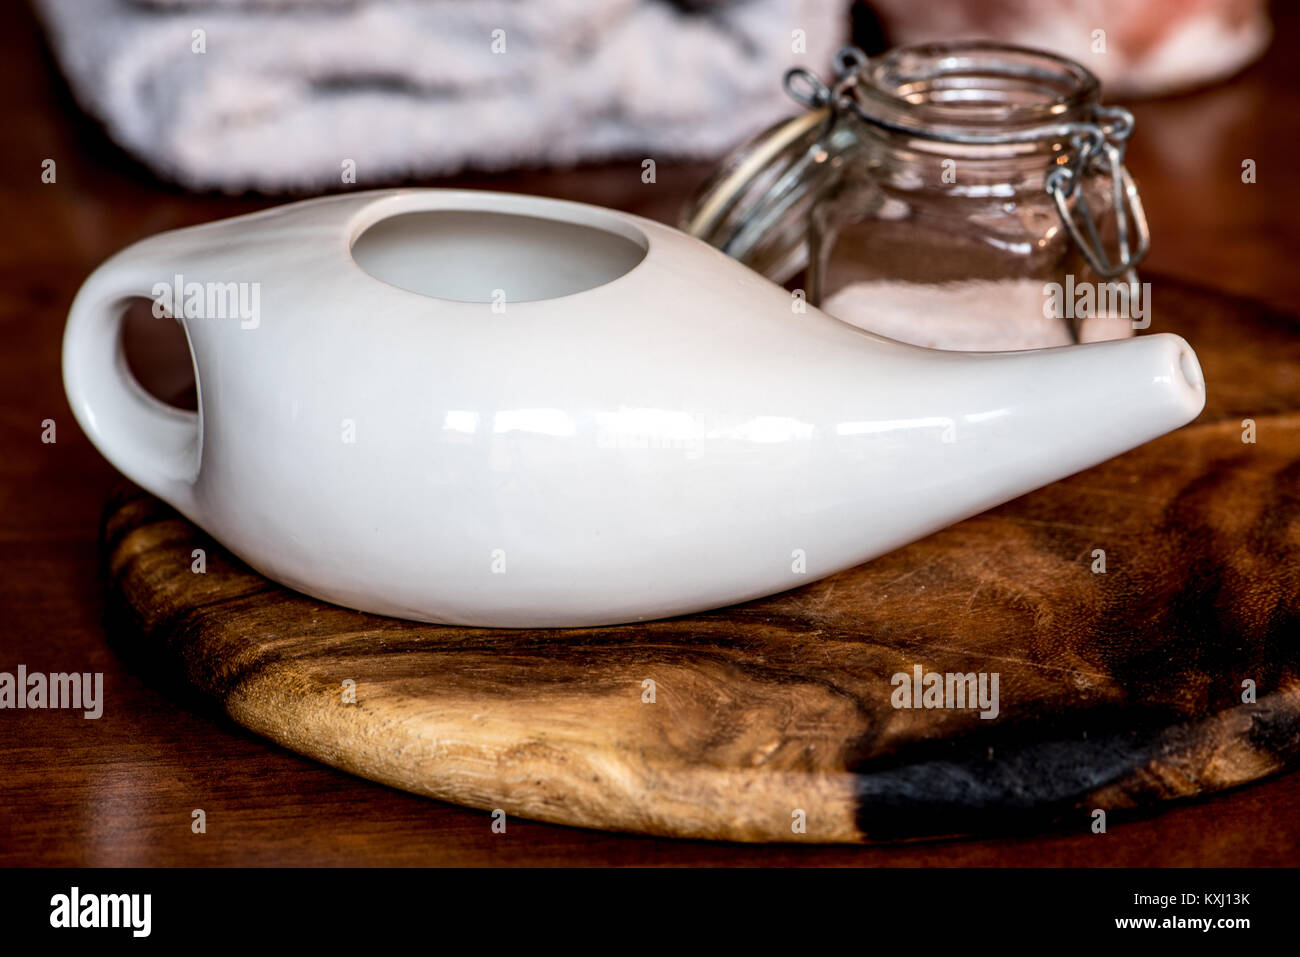 Pot neti ayurvédique, des outils pour nettoyer le nez avec de l'eau et le  sel, sur une table en bois Photo Stock - Alamy